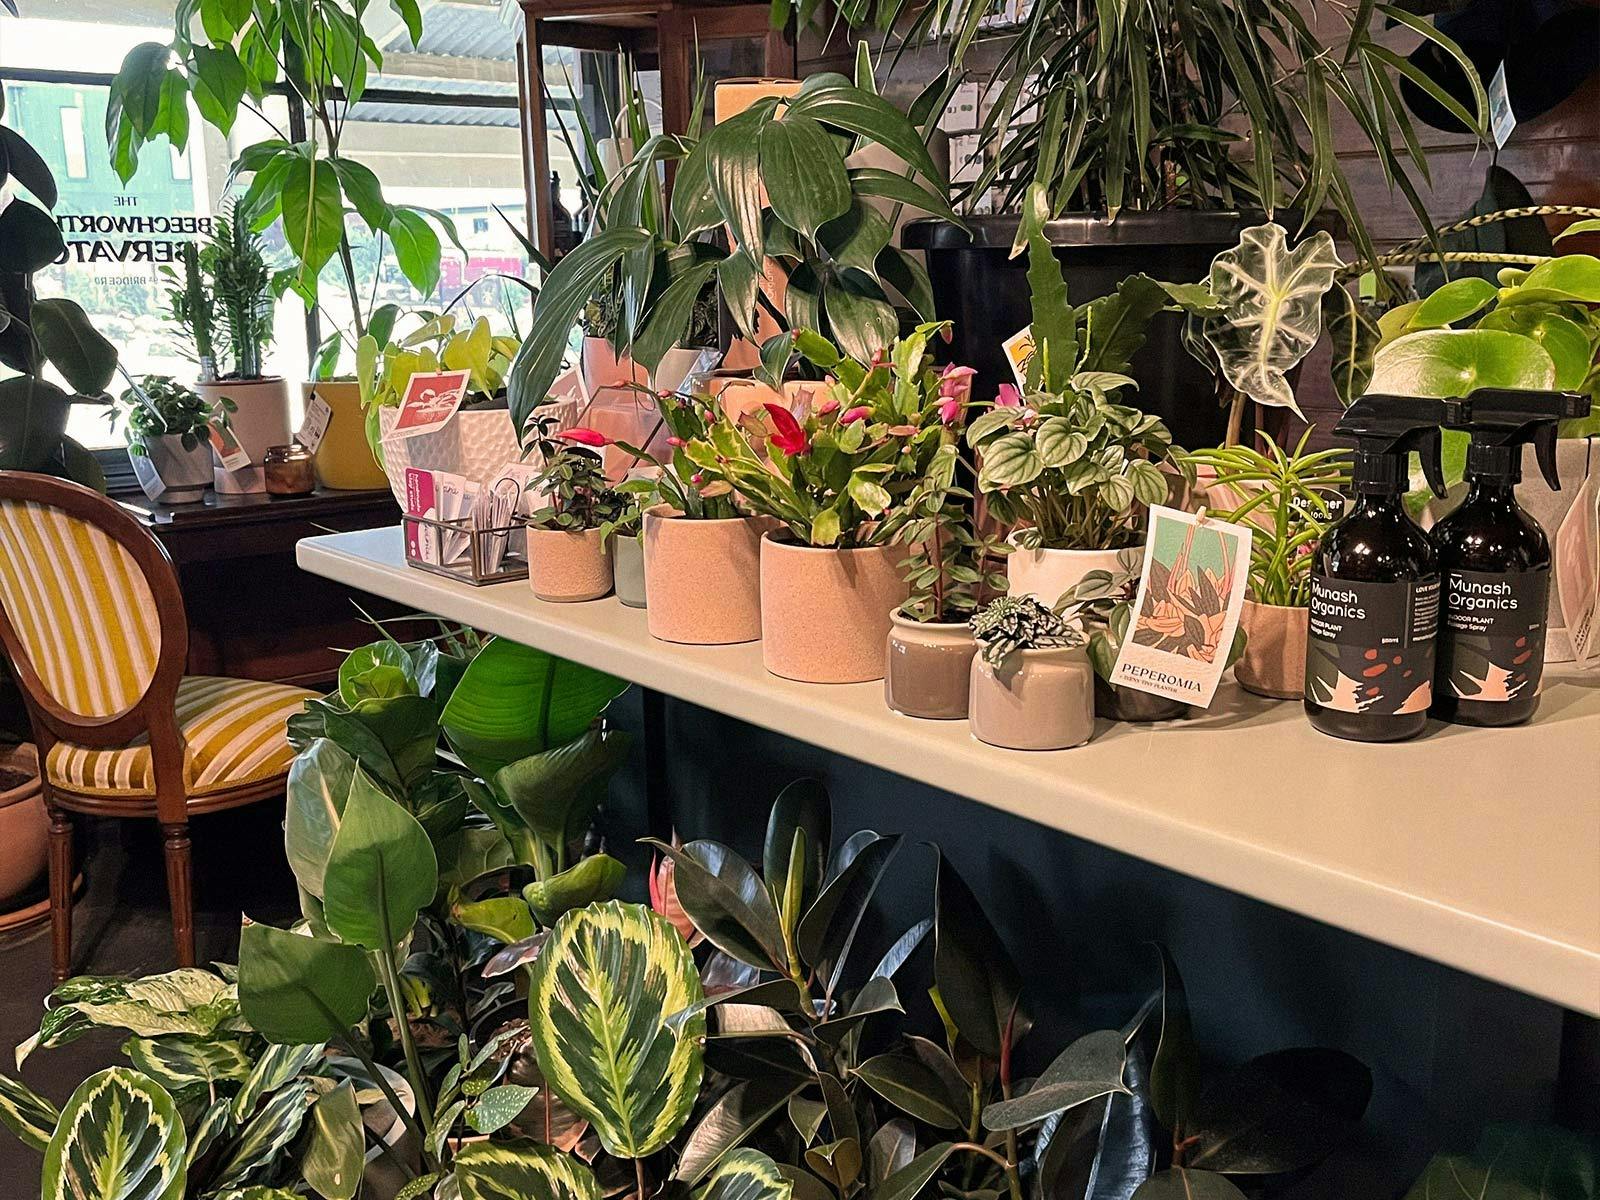 Munash Organics Indoor plants pots